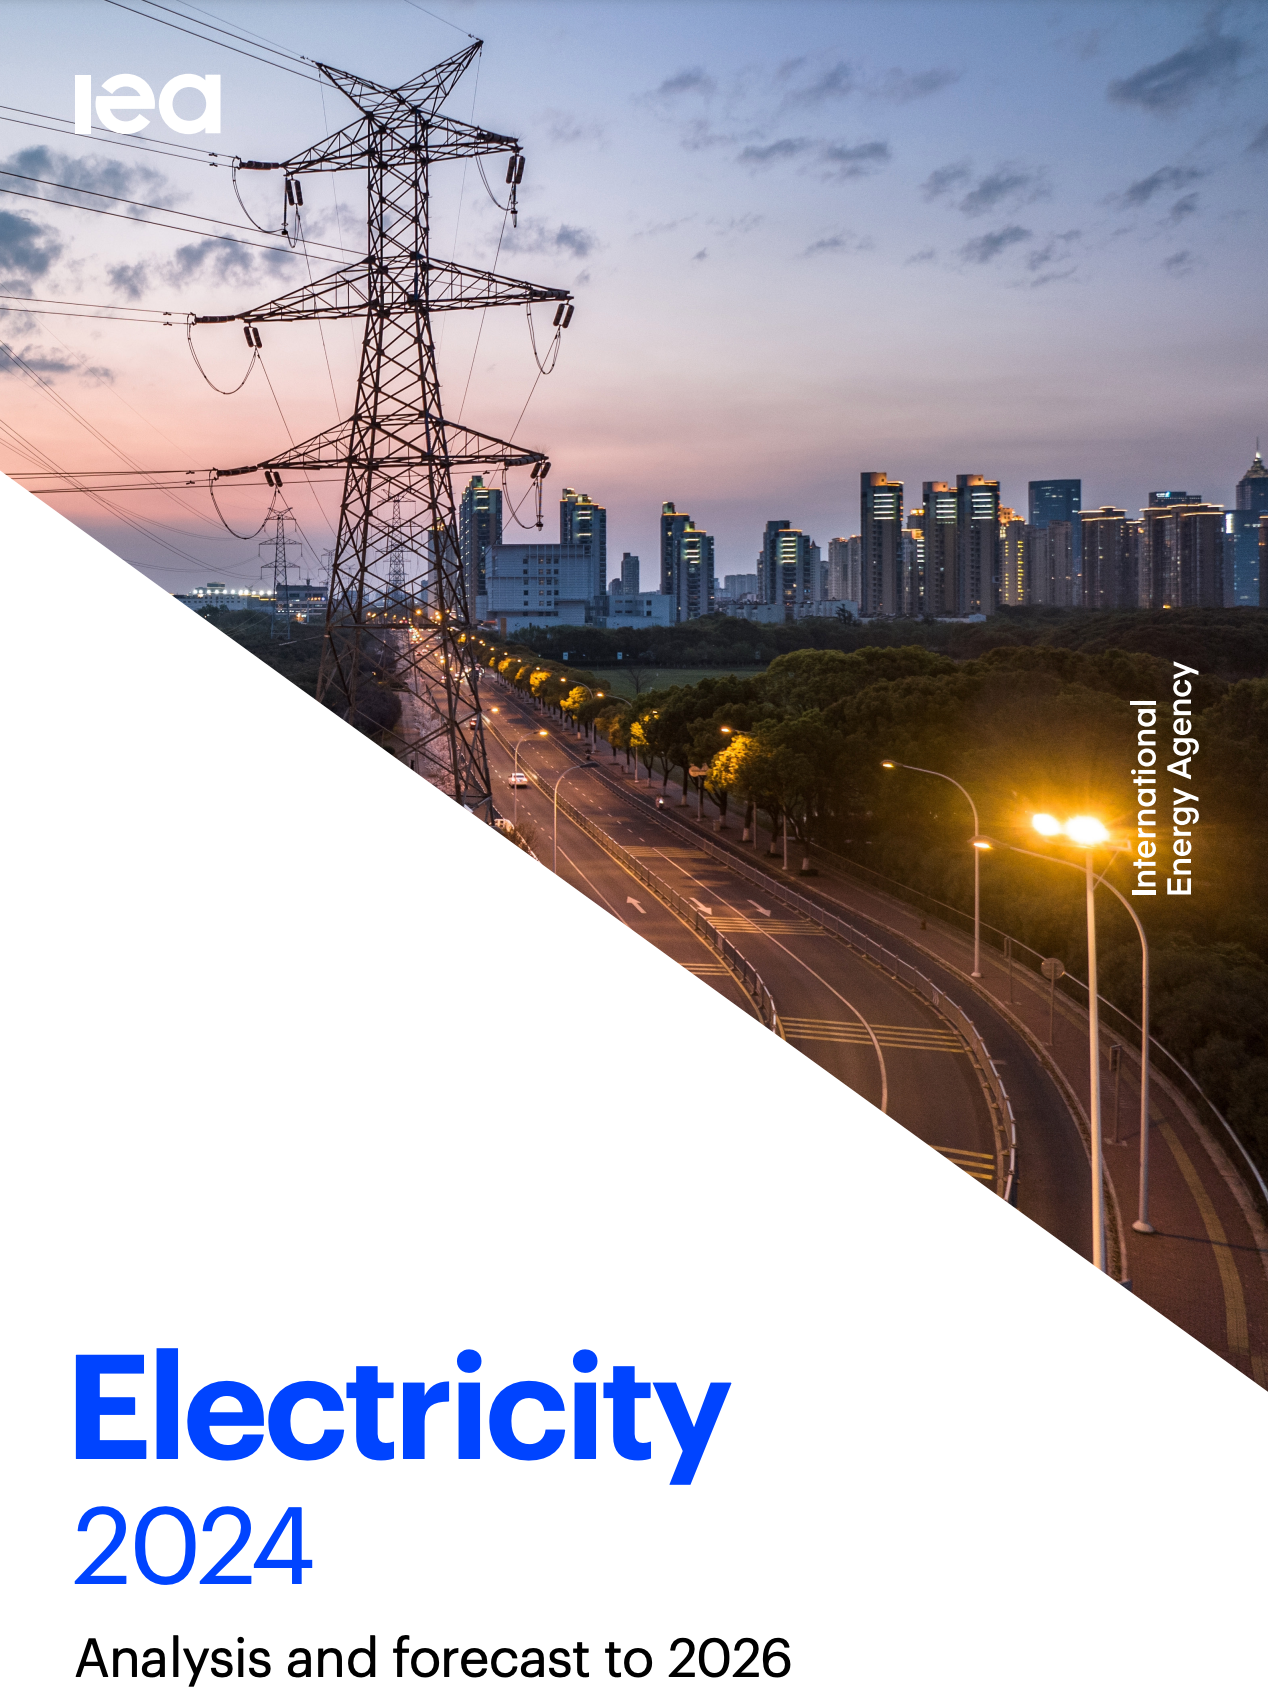 国际能源署发布《2024年电力》报告